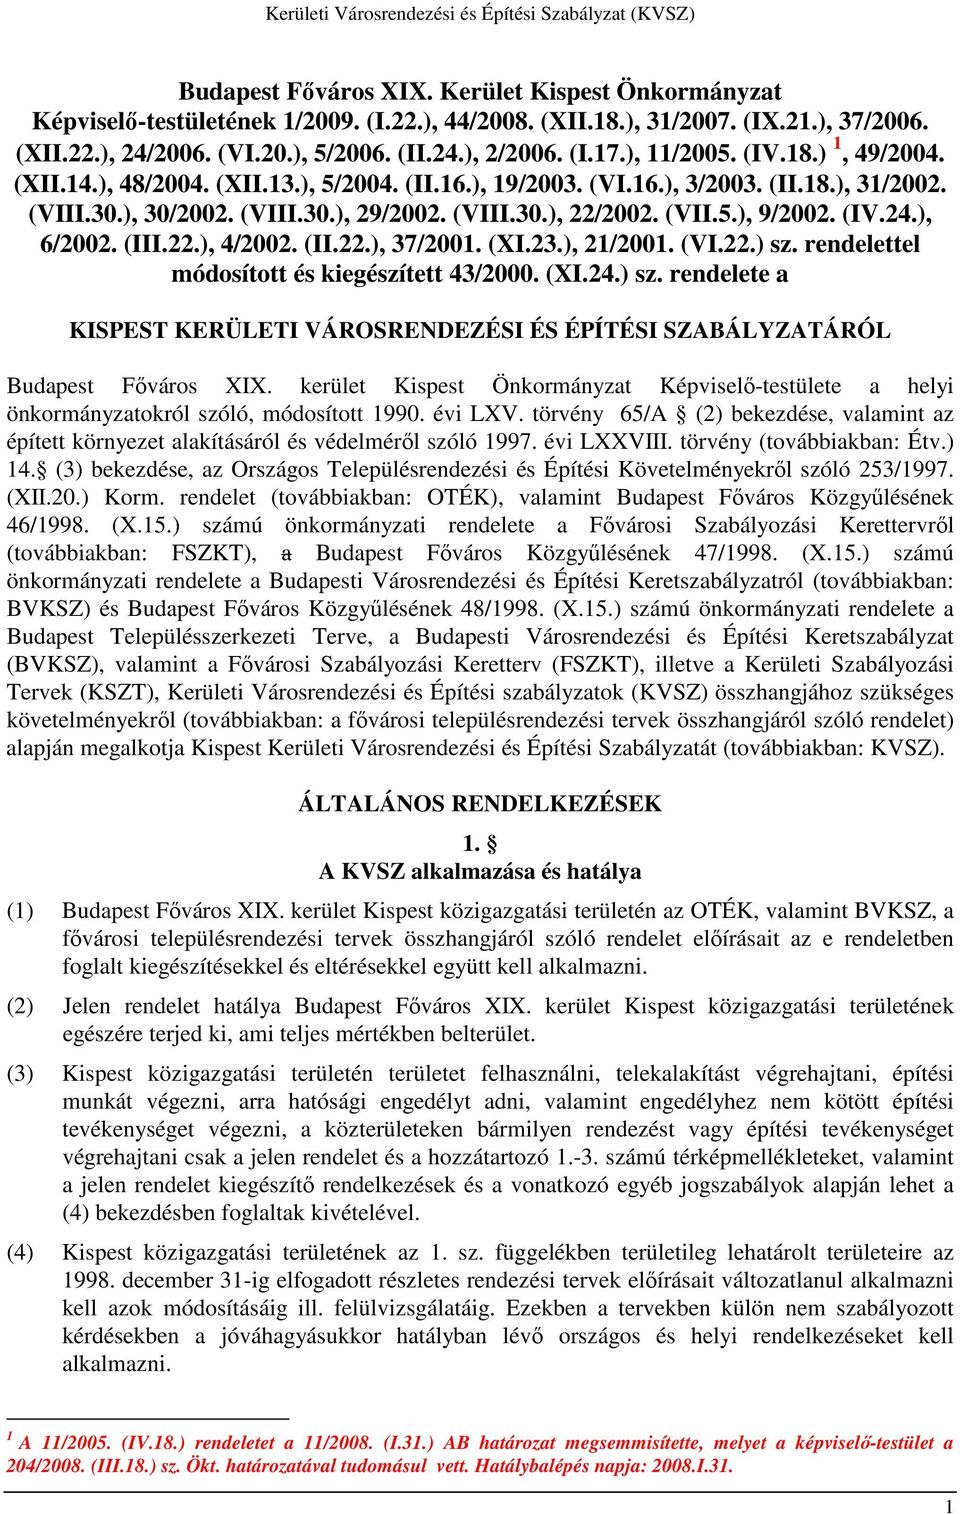 (IV.24.), 6/2002. (III.22.), 4/2002. (II.22.), 37/2001. (XI.23.), 21/2001. (VI.22.) sz. rendelettel módosított és kiegészített 43/2000. (XI.24.) sz. rendelete a KISPEST KERÜLETI VÁROSRENDEZÉSI ÉS ÉPÍTÉSI SZABÁLYZATÁRÓL Budapest Fıváros XIX.